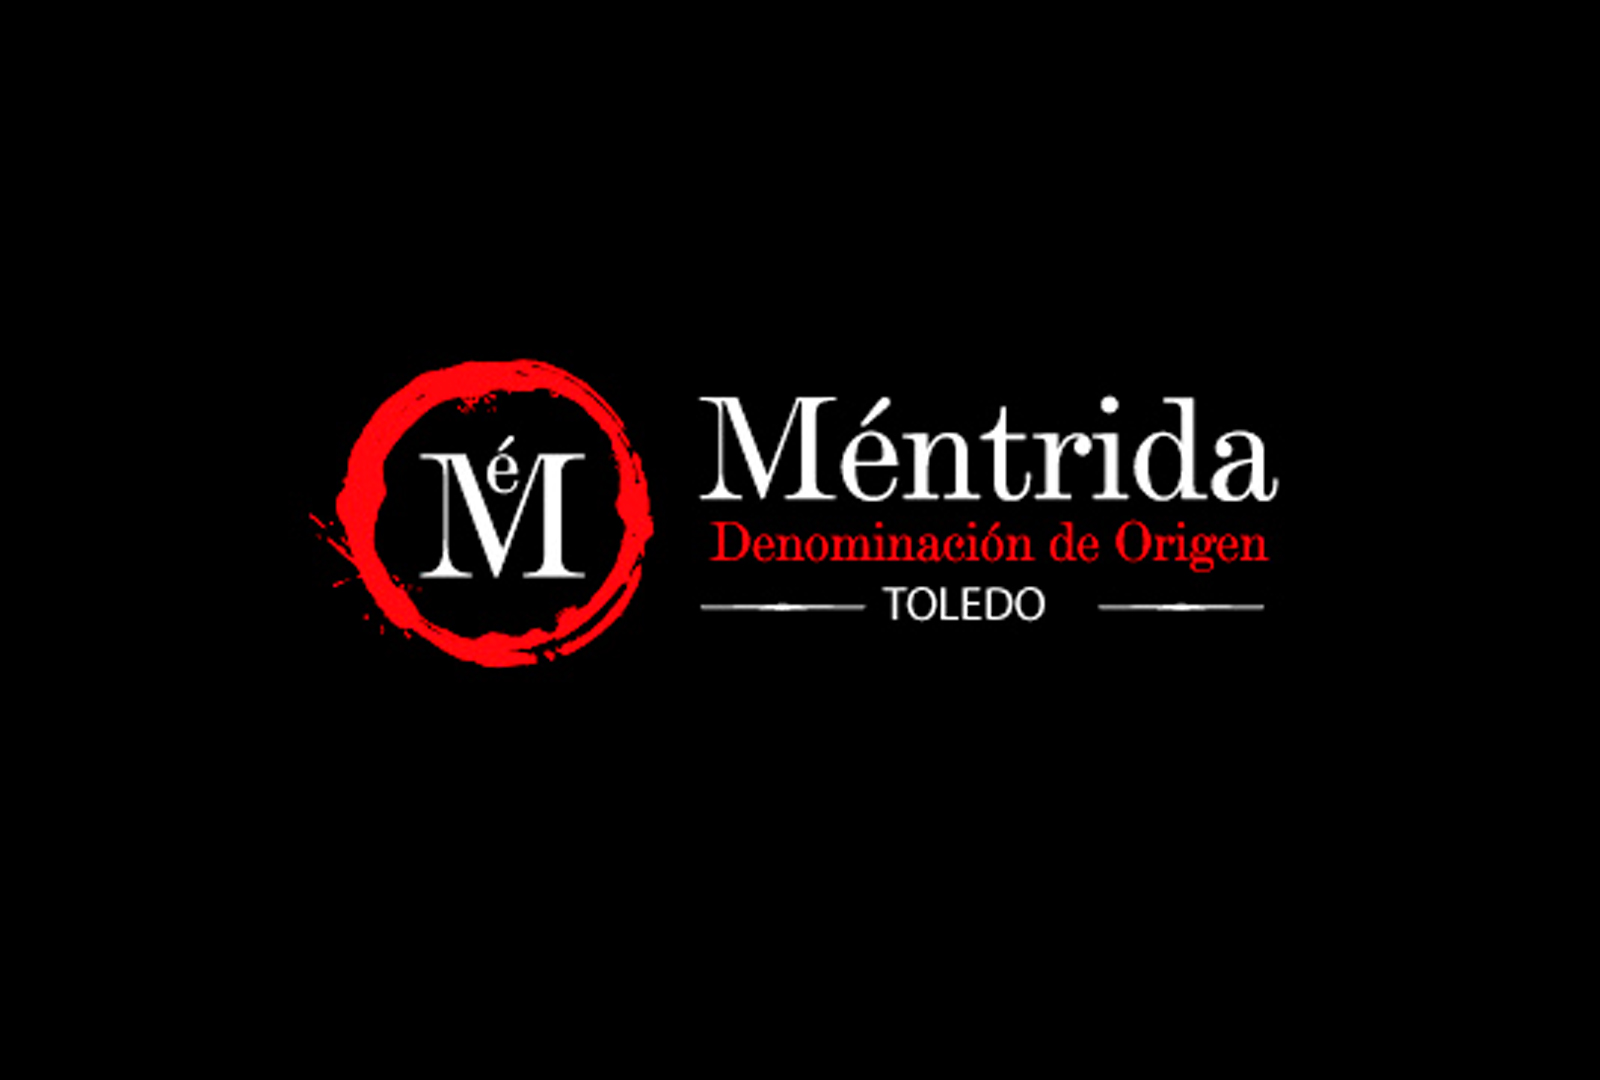 13 bodegas de la DO Méntrida participan en la Fiesta de la Vendimia - VINOS DIFERENTES